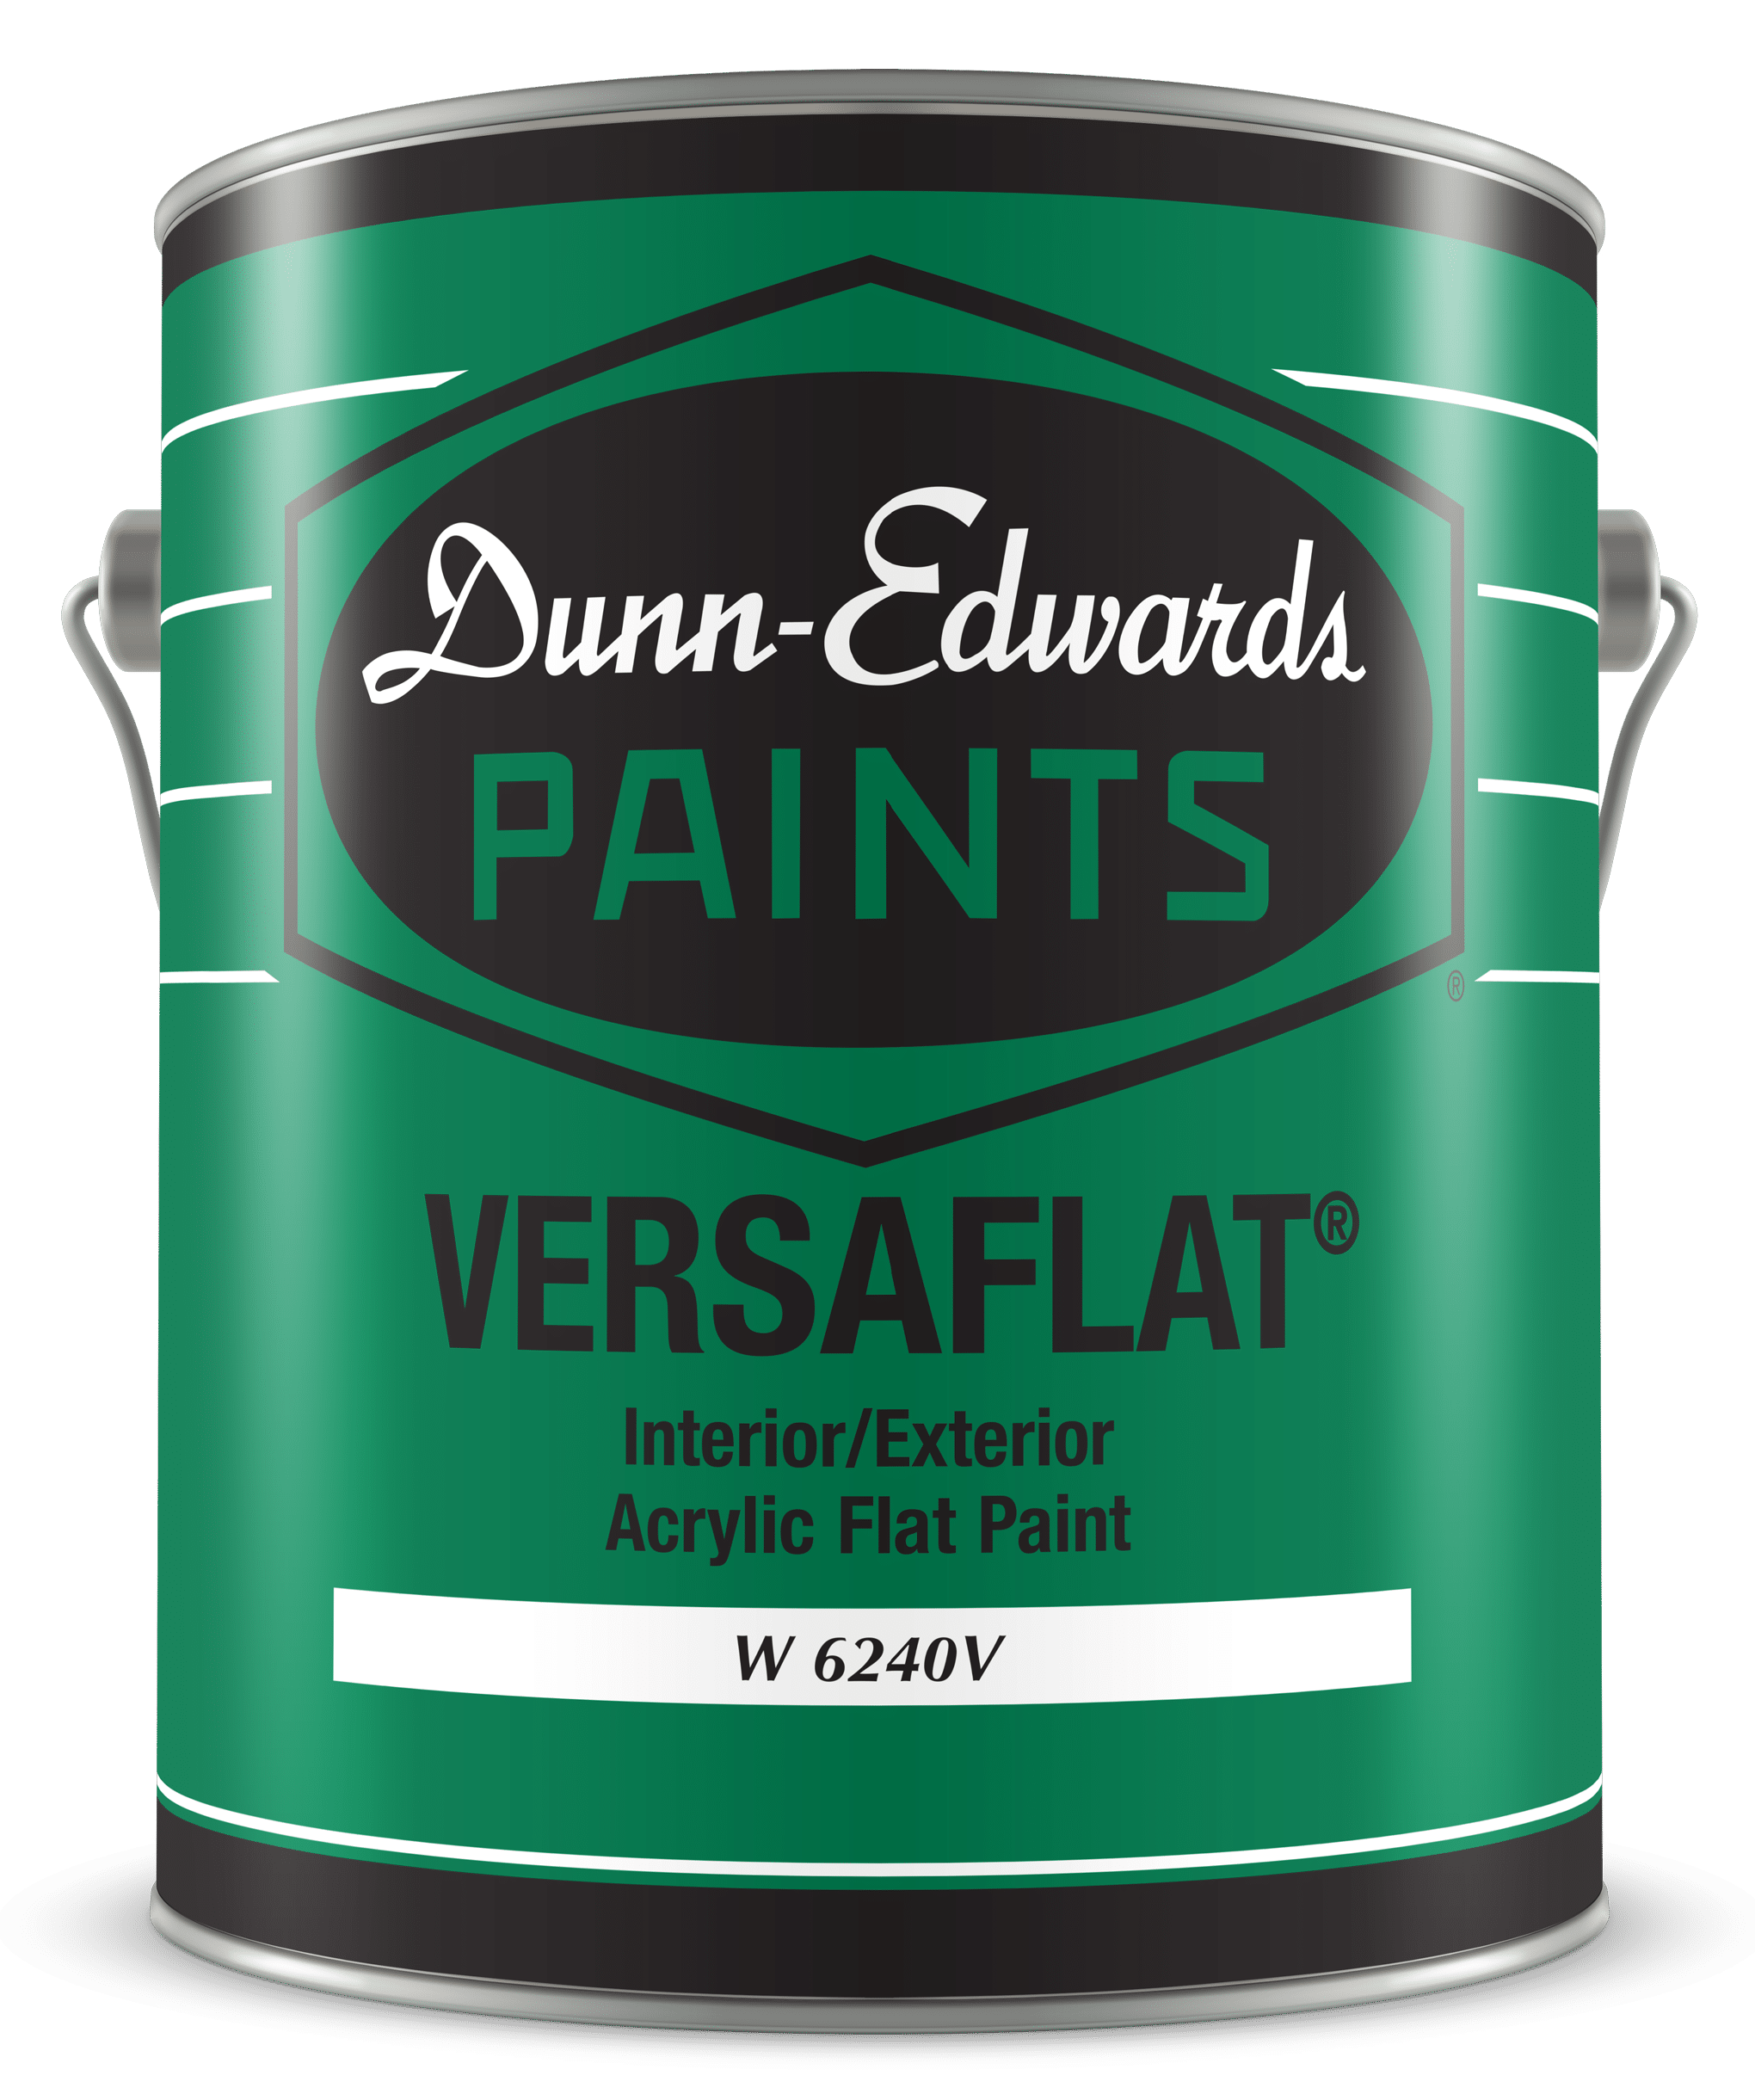 VERSAFLAT Interior/Exterior Acrylic Flat Paint Can